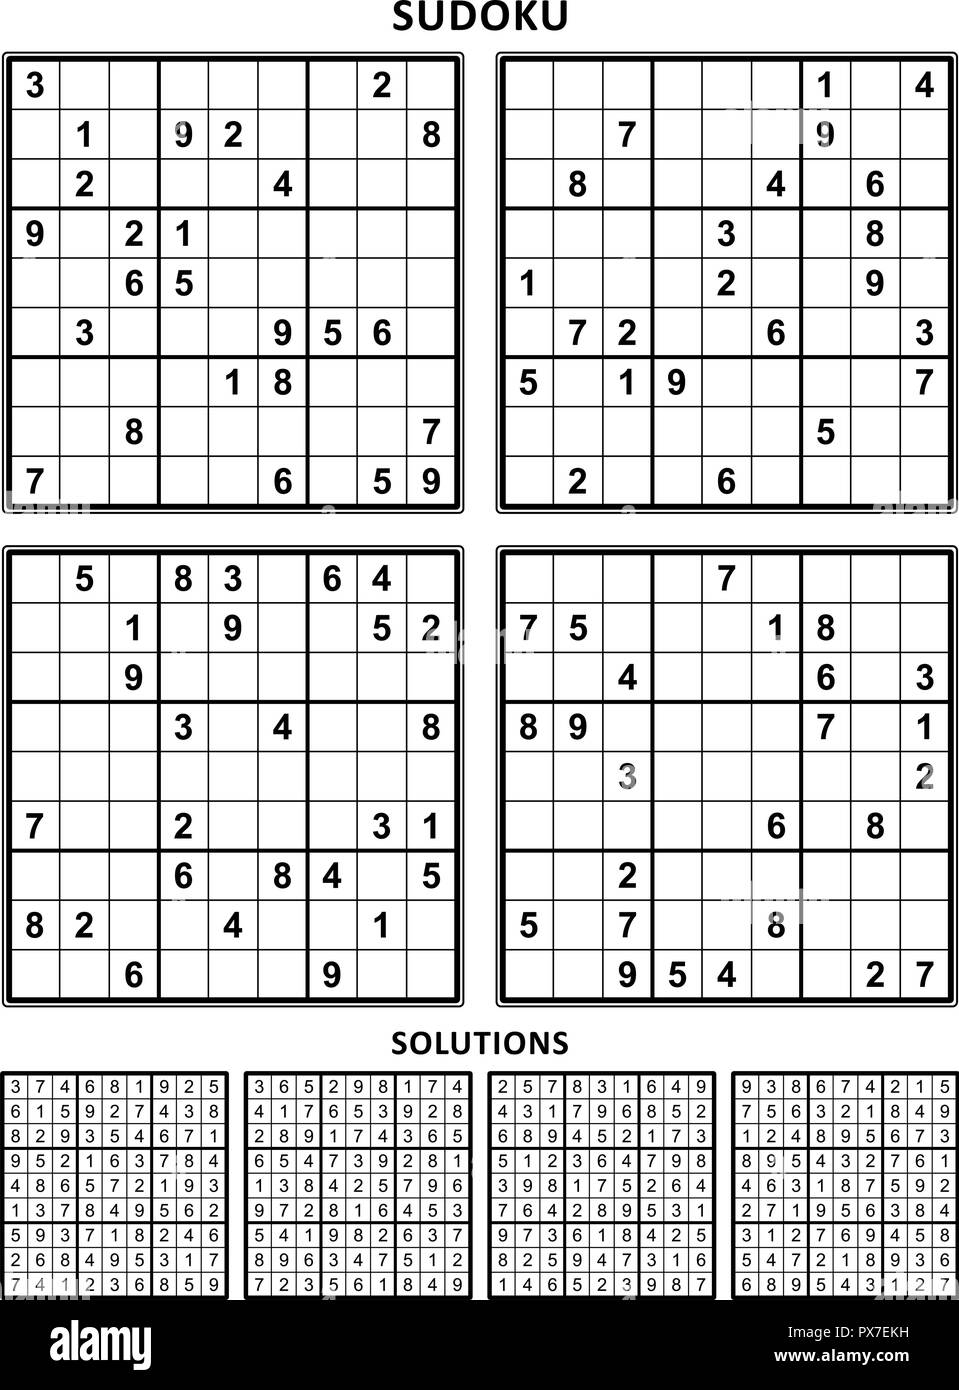 Sudoku per bambini 8-10 anni: 200 Sudoku per bambini di 8-10 anni -  istruzioni e soluzioni incluse (Vol. 1) (Paperback)